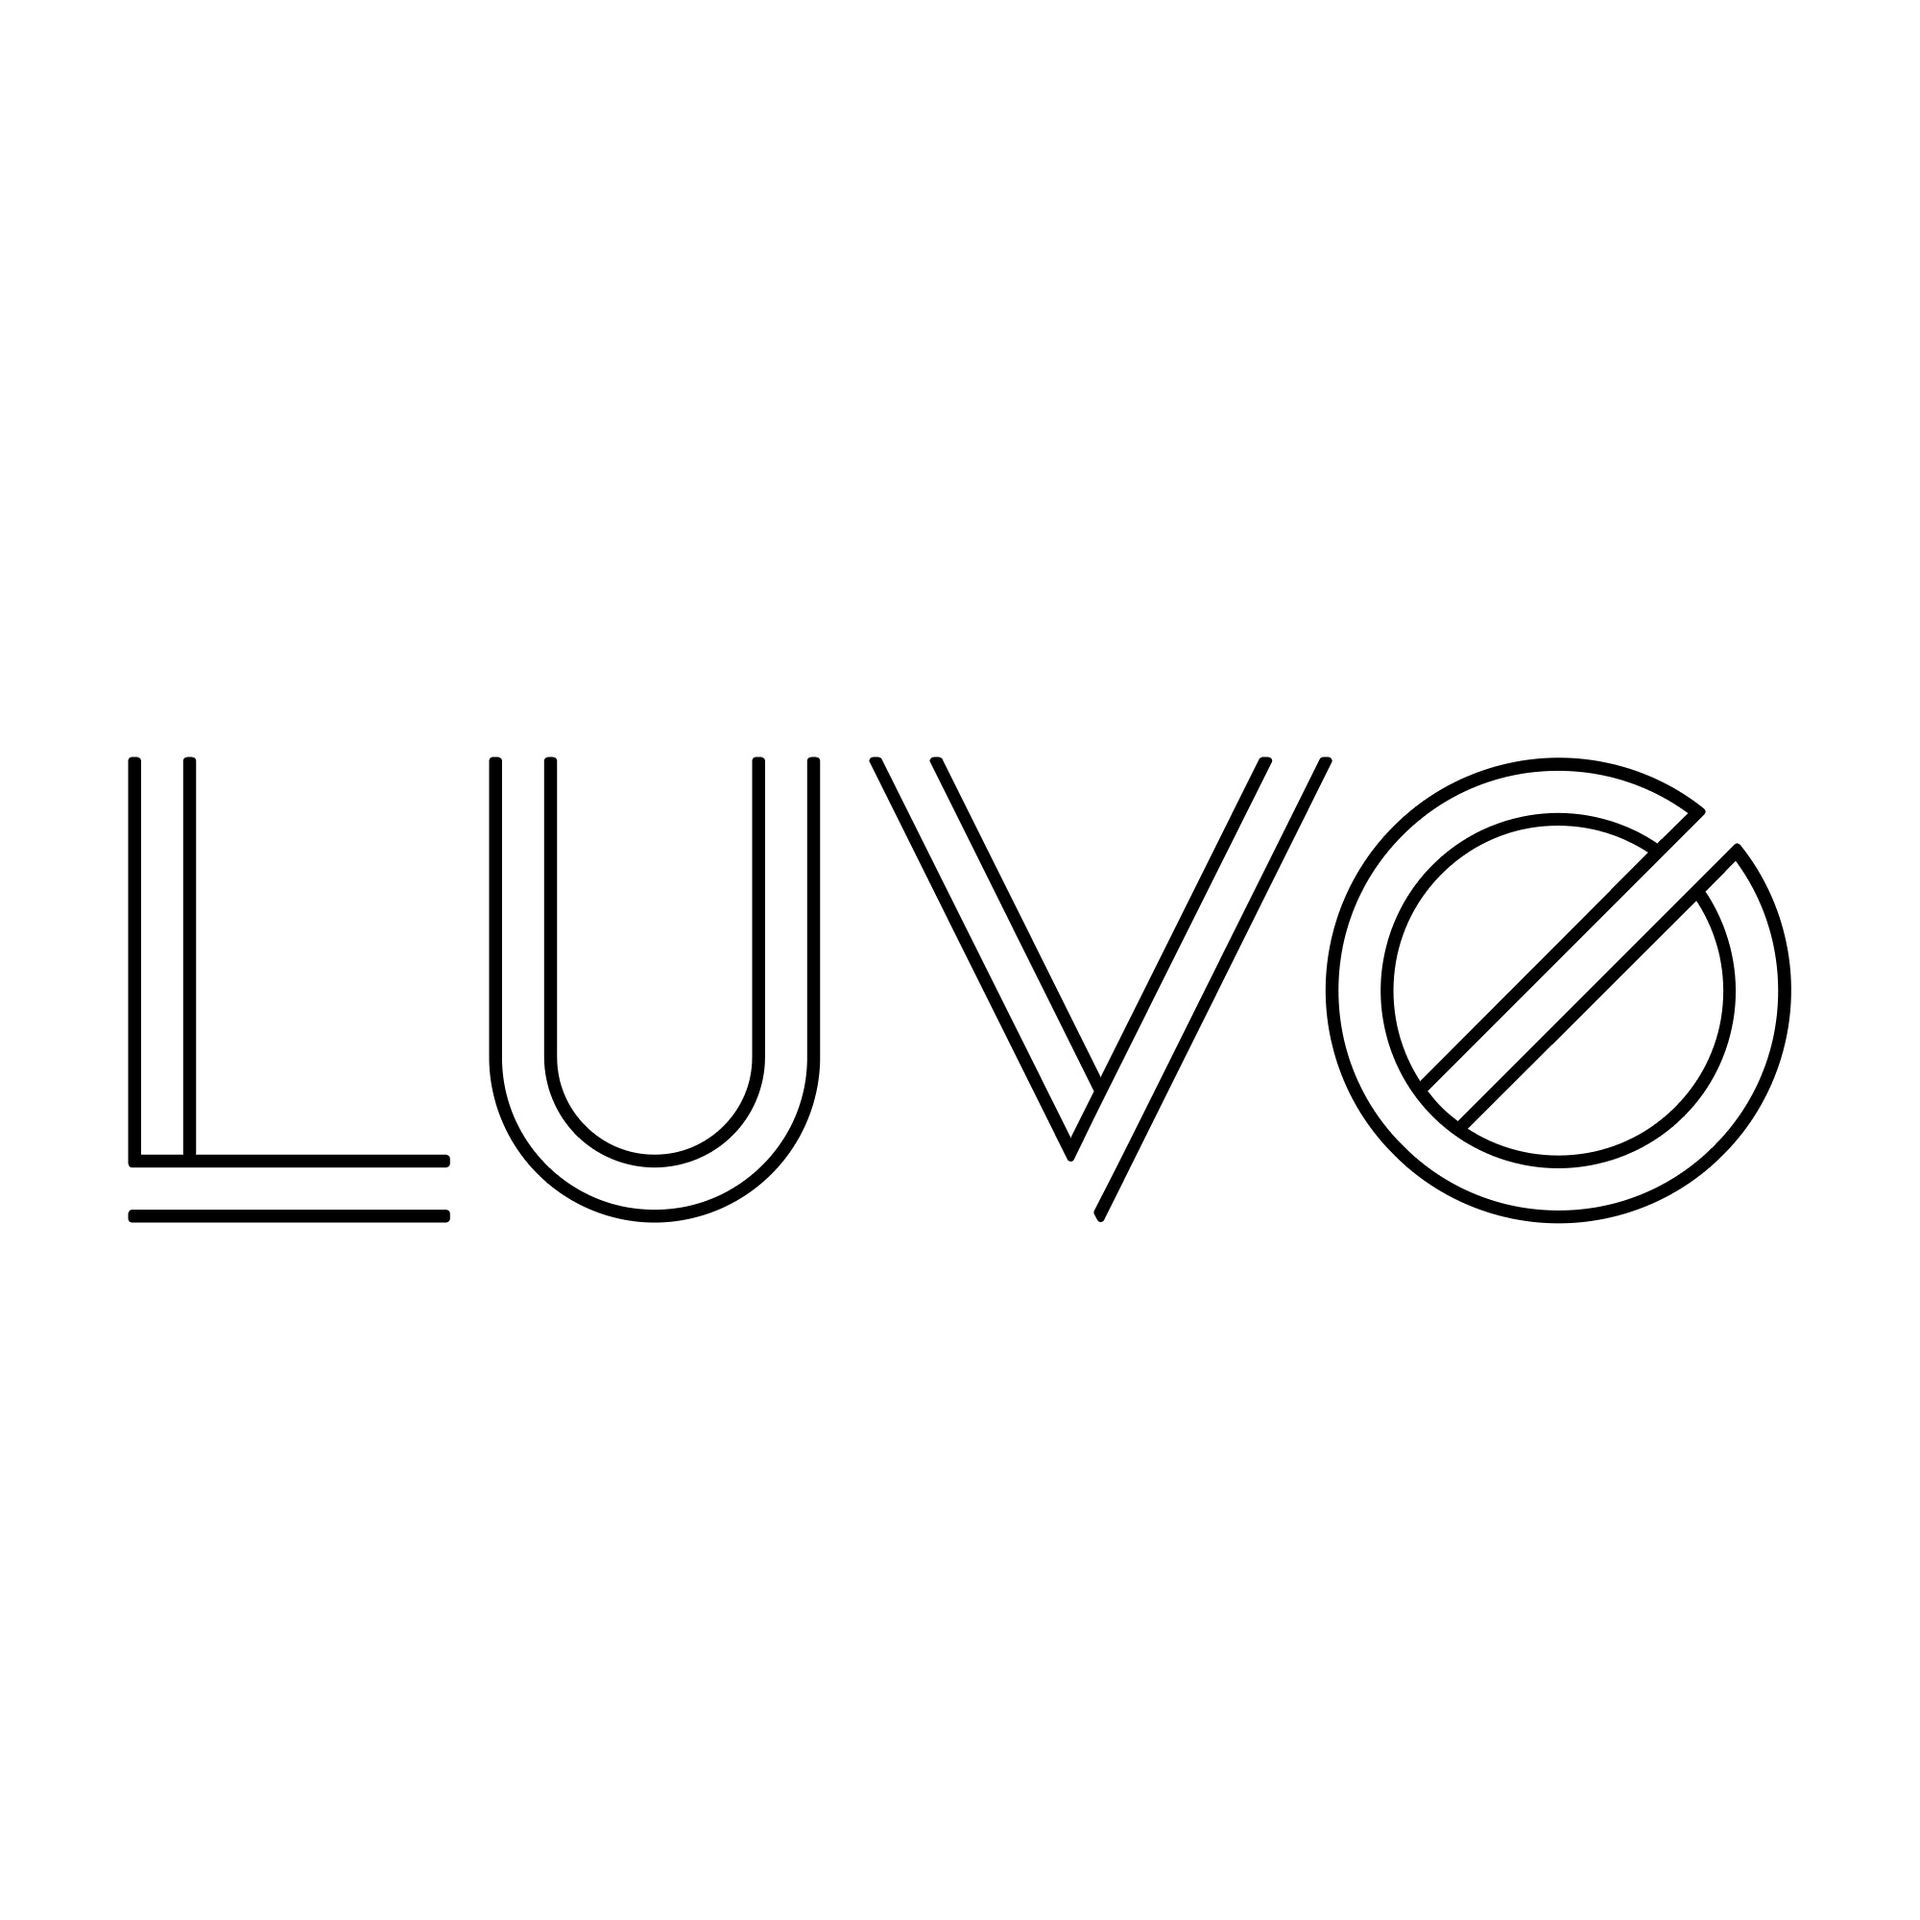 LUVO logo